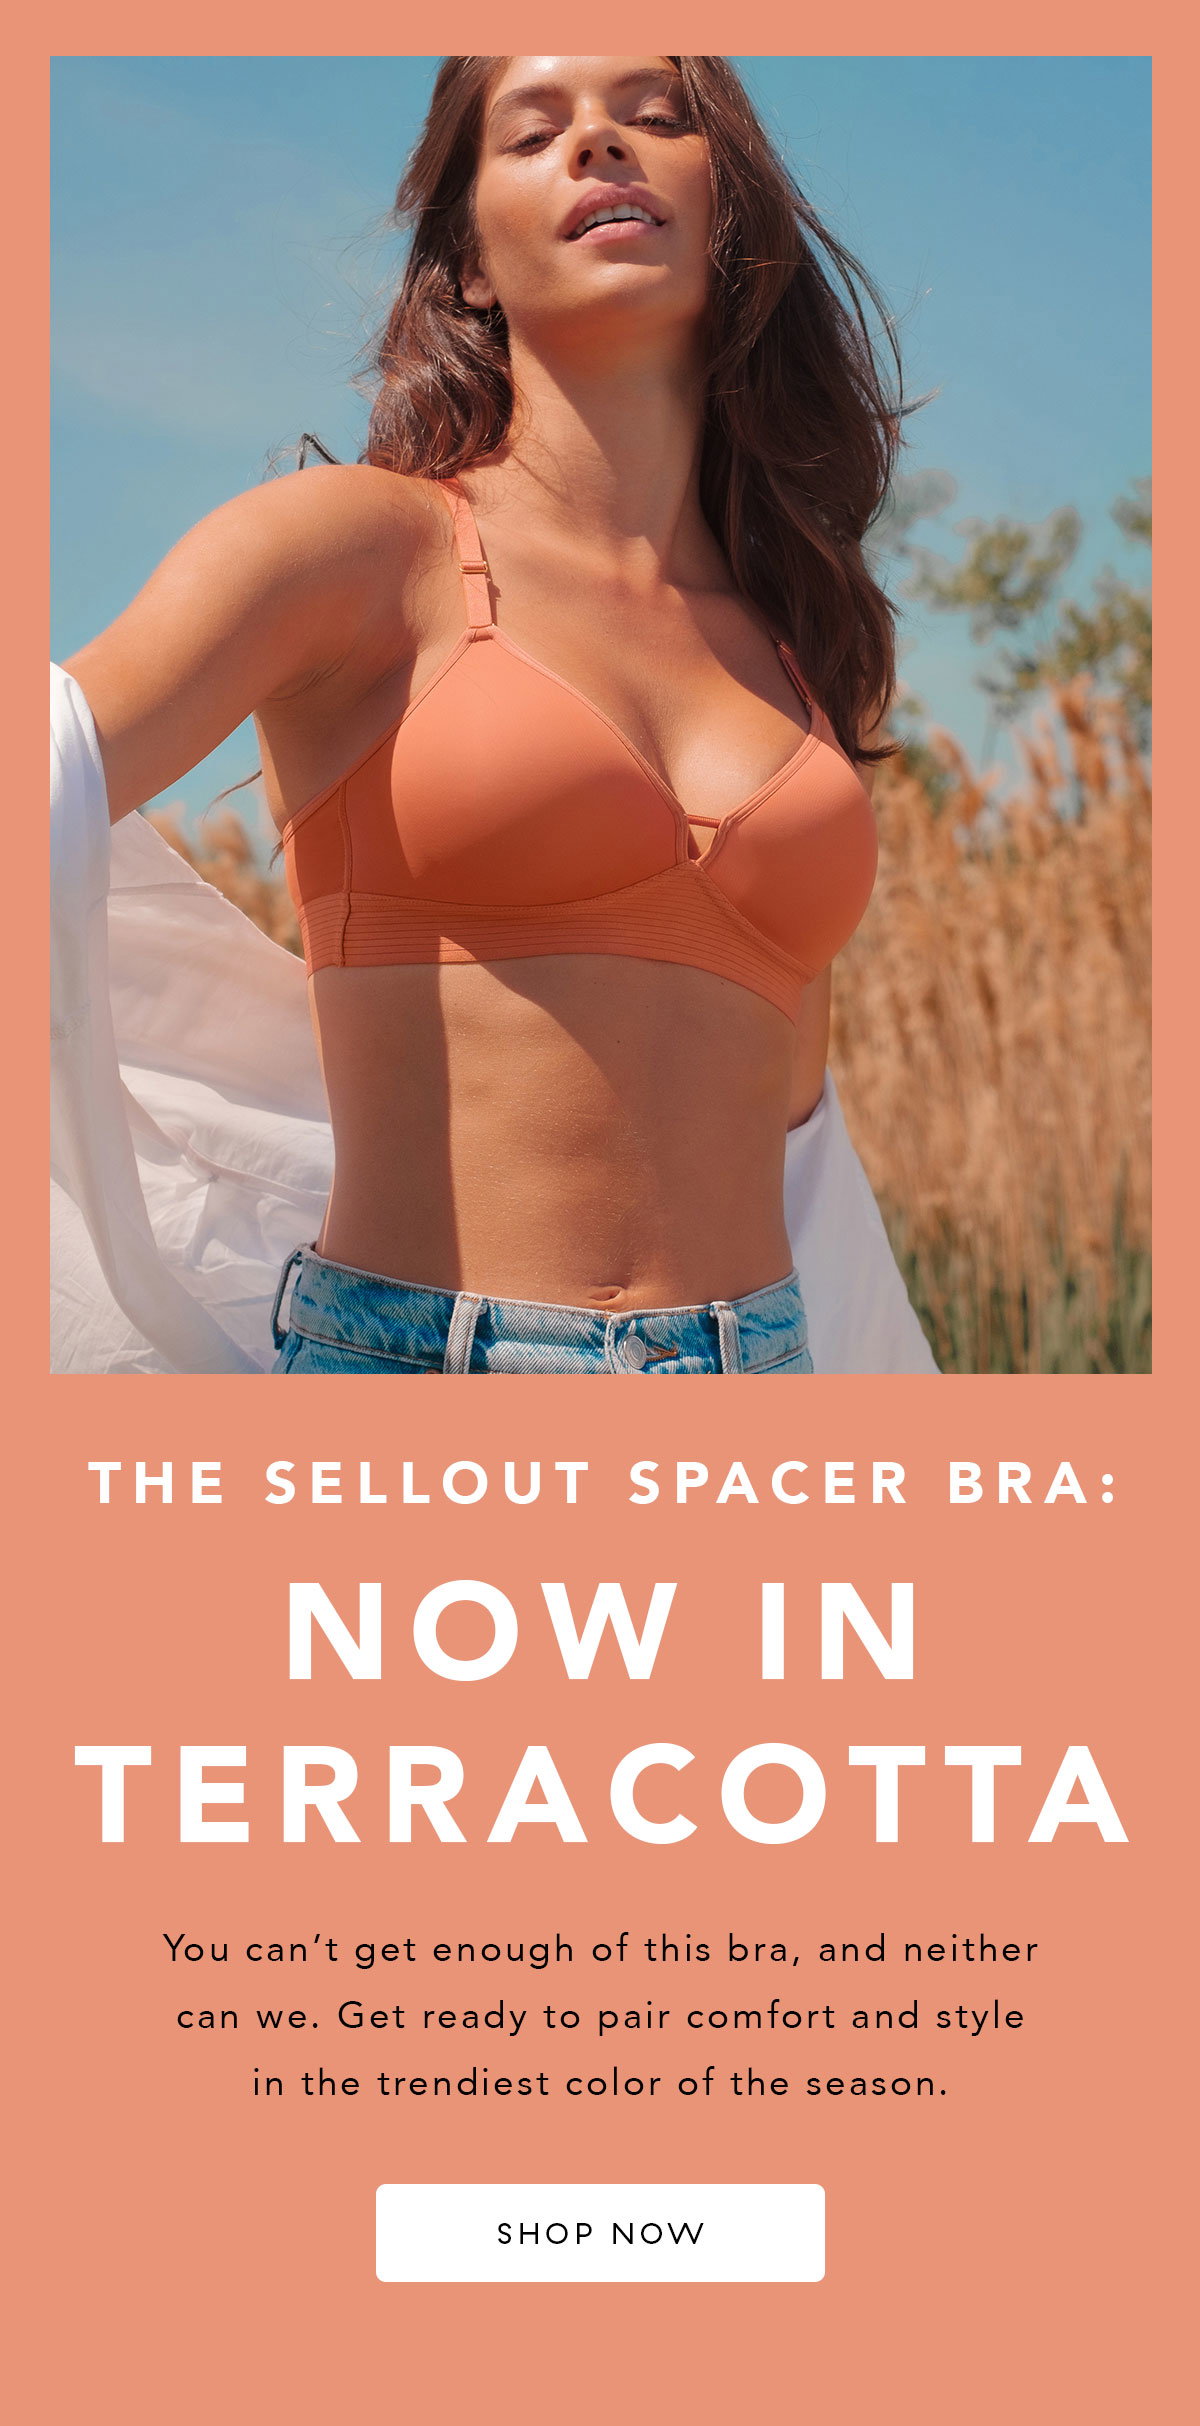 The Spacer Bra: Terracotta